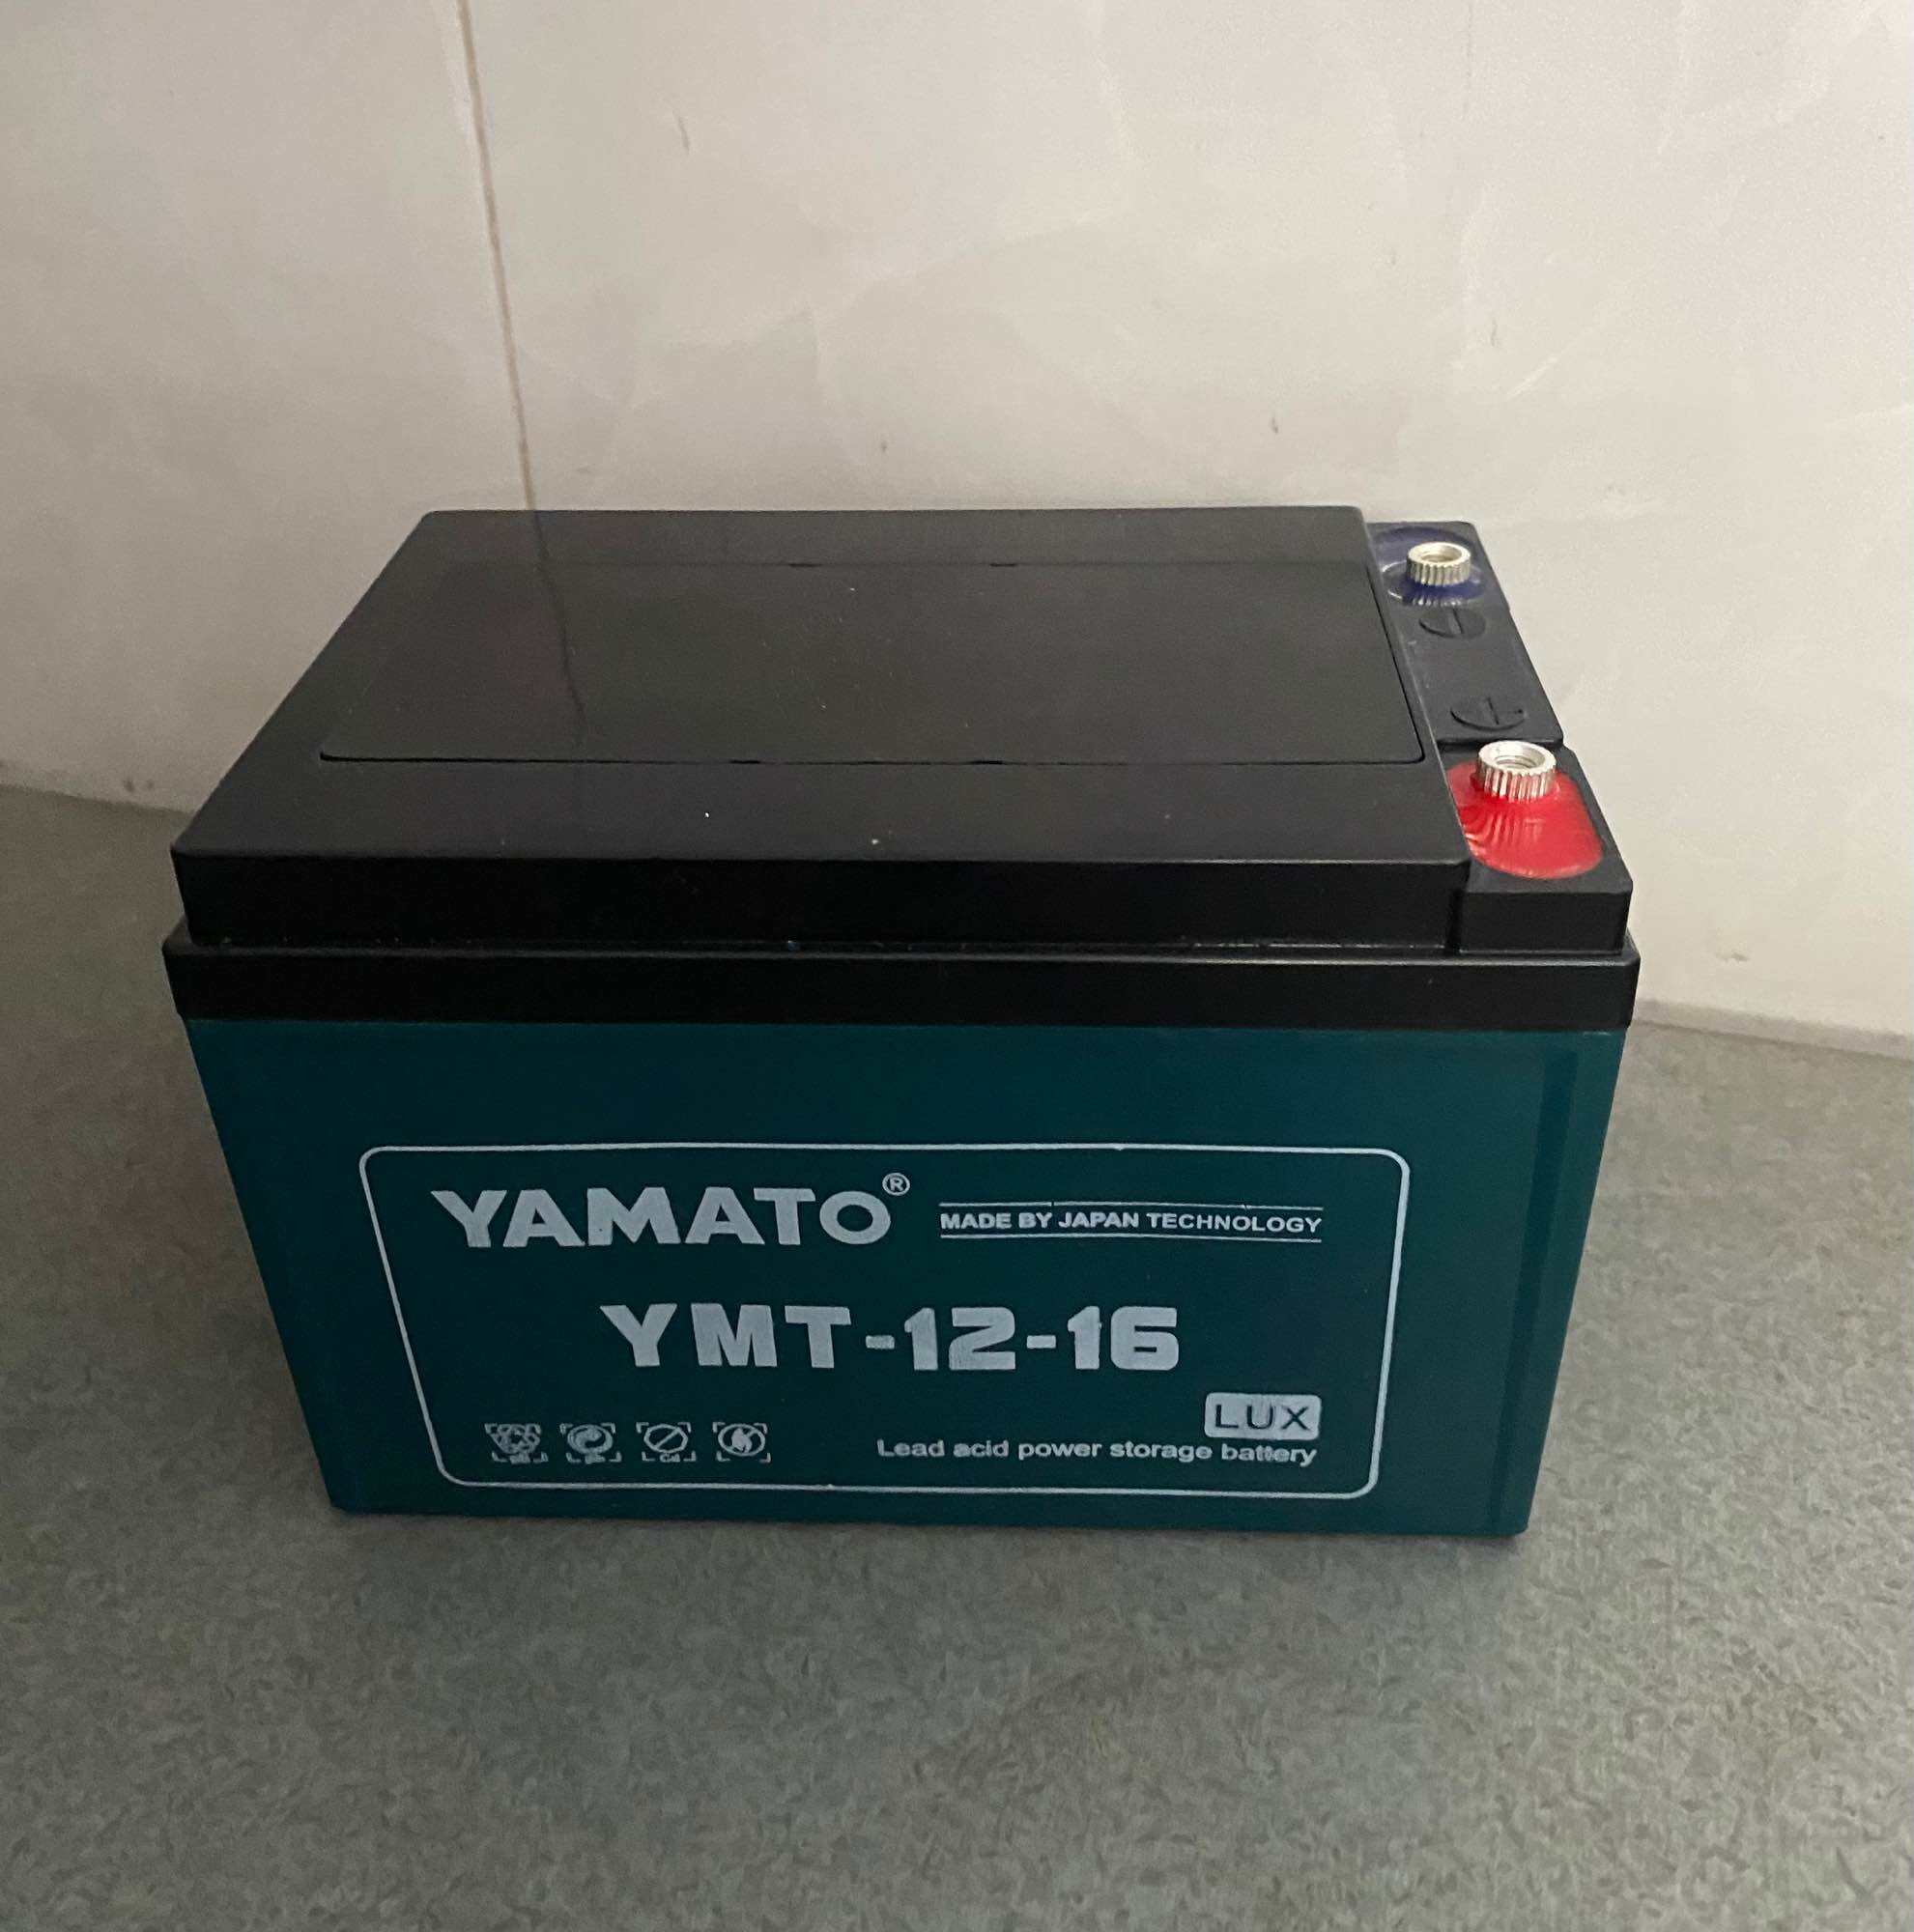 Bộ 4 Ắc quy xe đạp điện Yamato 6-FM-15 (12V-15Ah) acquy Yamato cho loa kéo thang máy quạt điện năng lượng mặt trời .v.v.